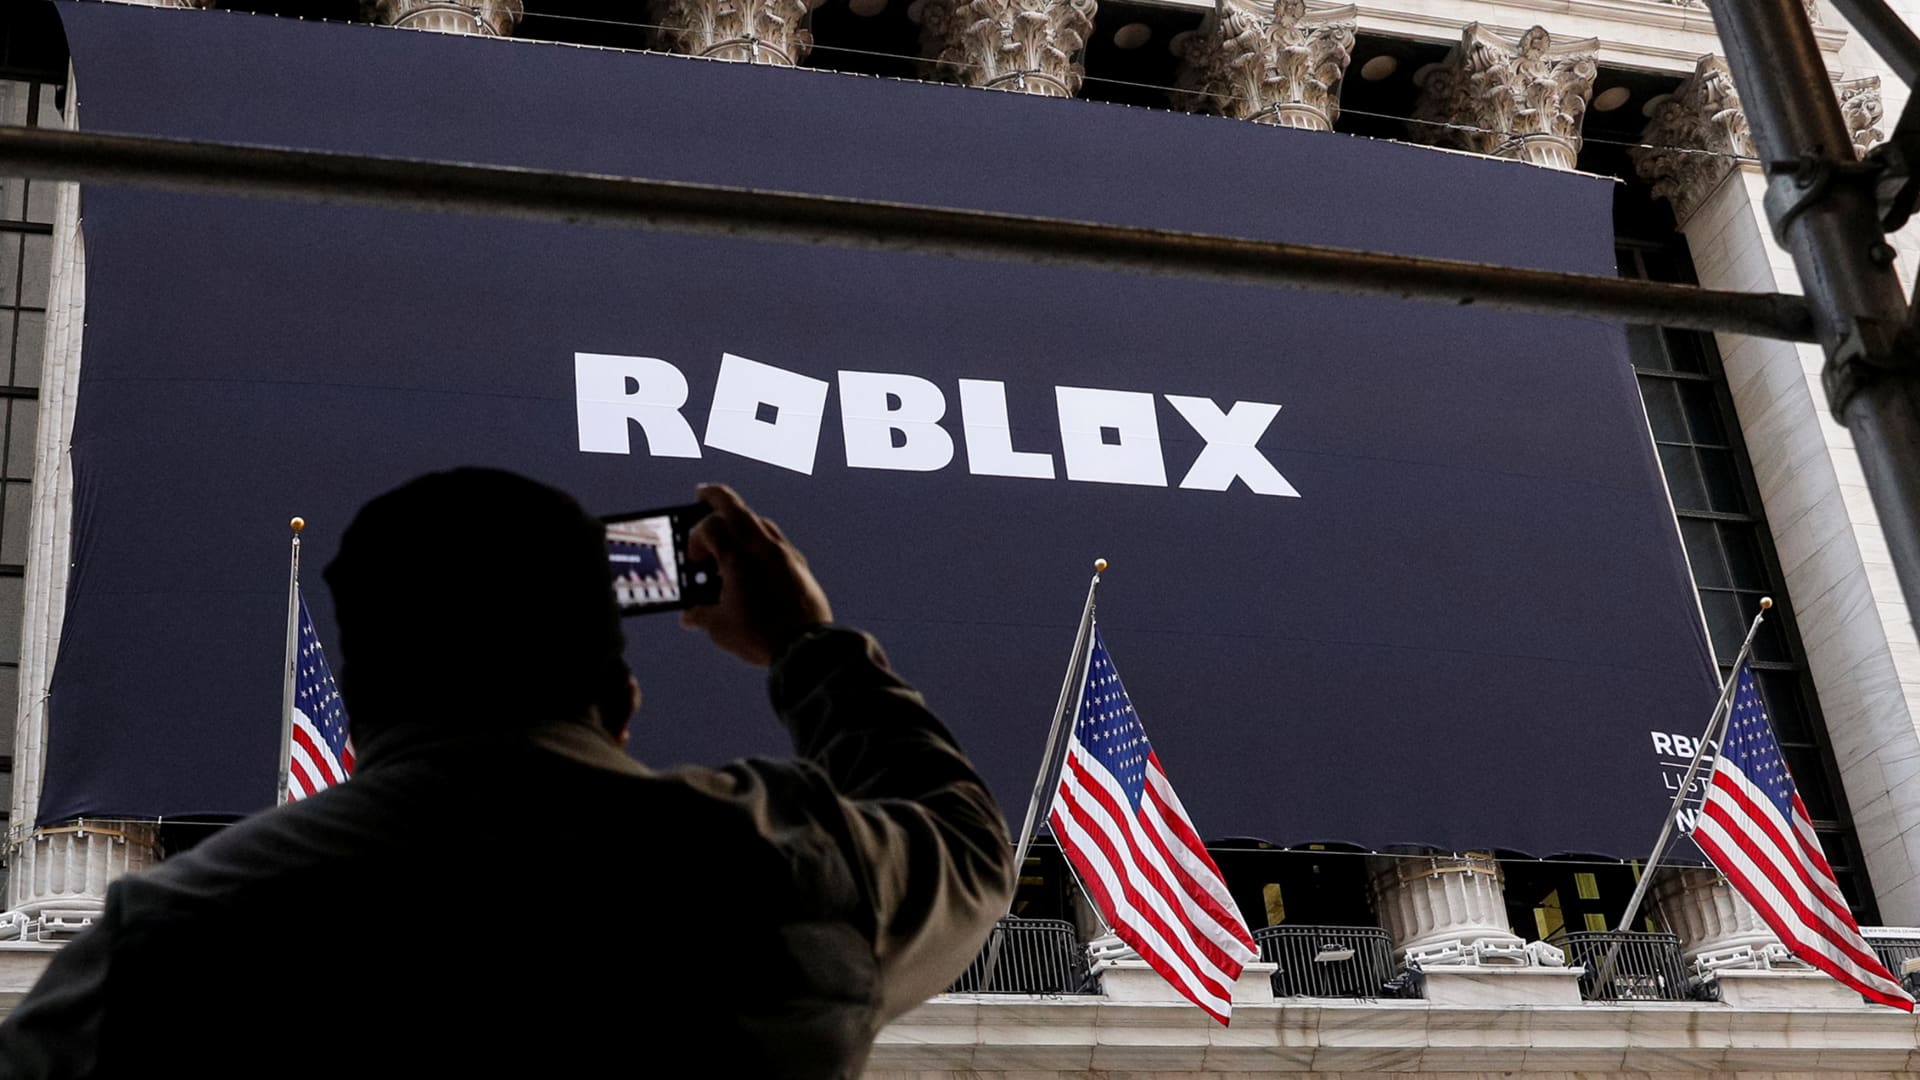 Roblox Delays IPO Until Next Year - WSJ